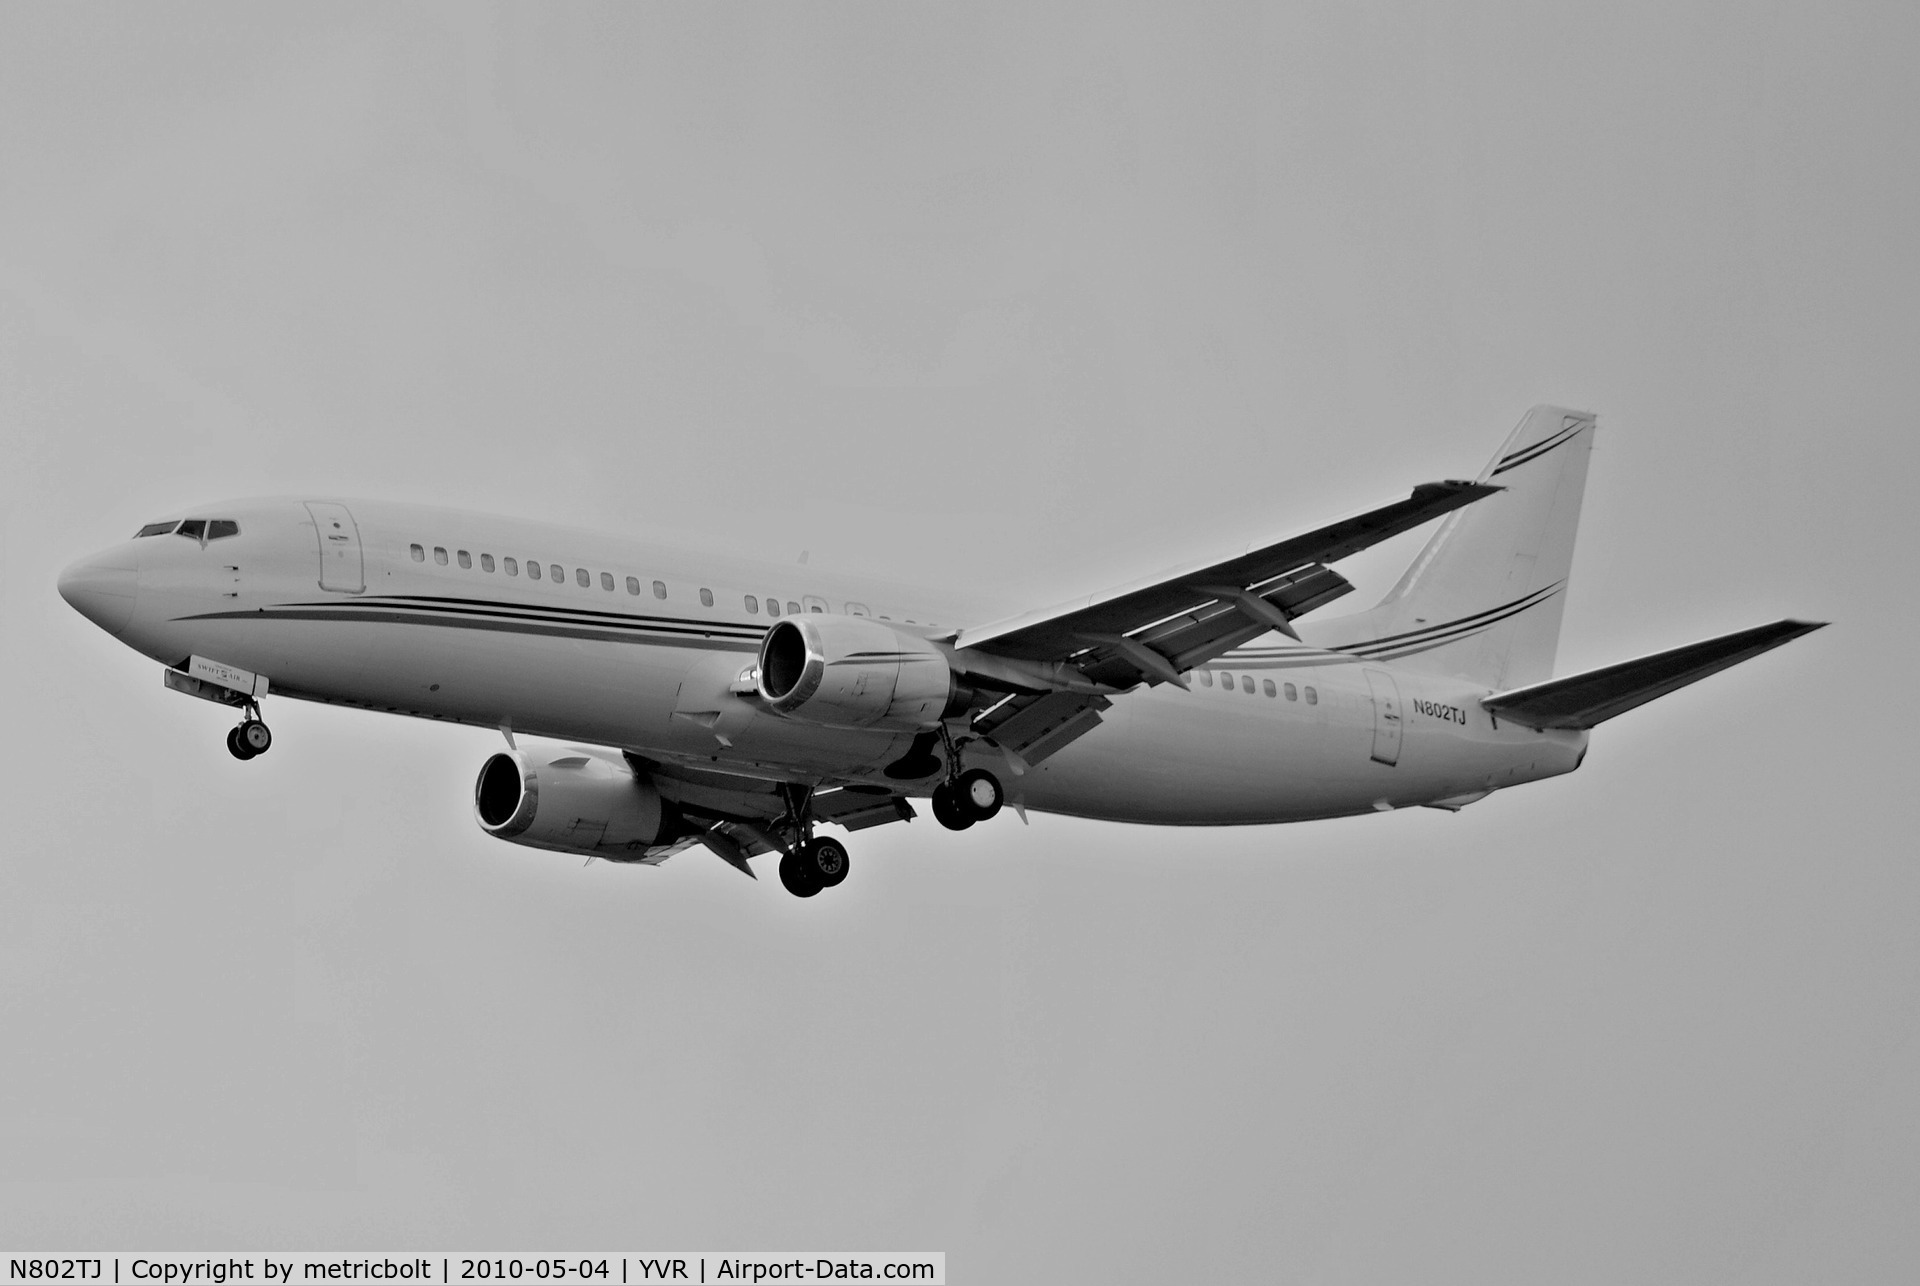 N802TJ, 1990 Boeing 737-4B7 C/N 24874, Landing at YVR. Operated by Swift Air